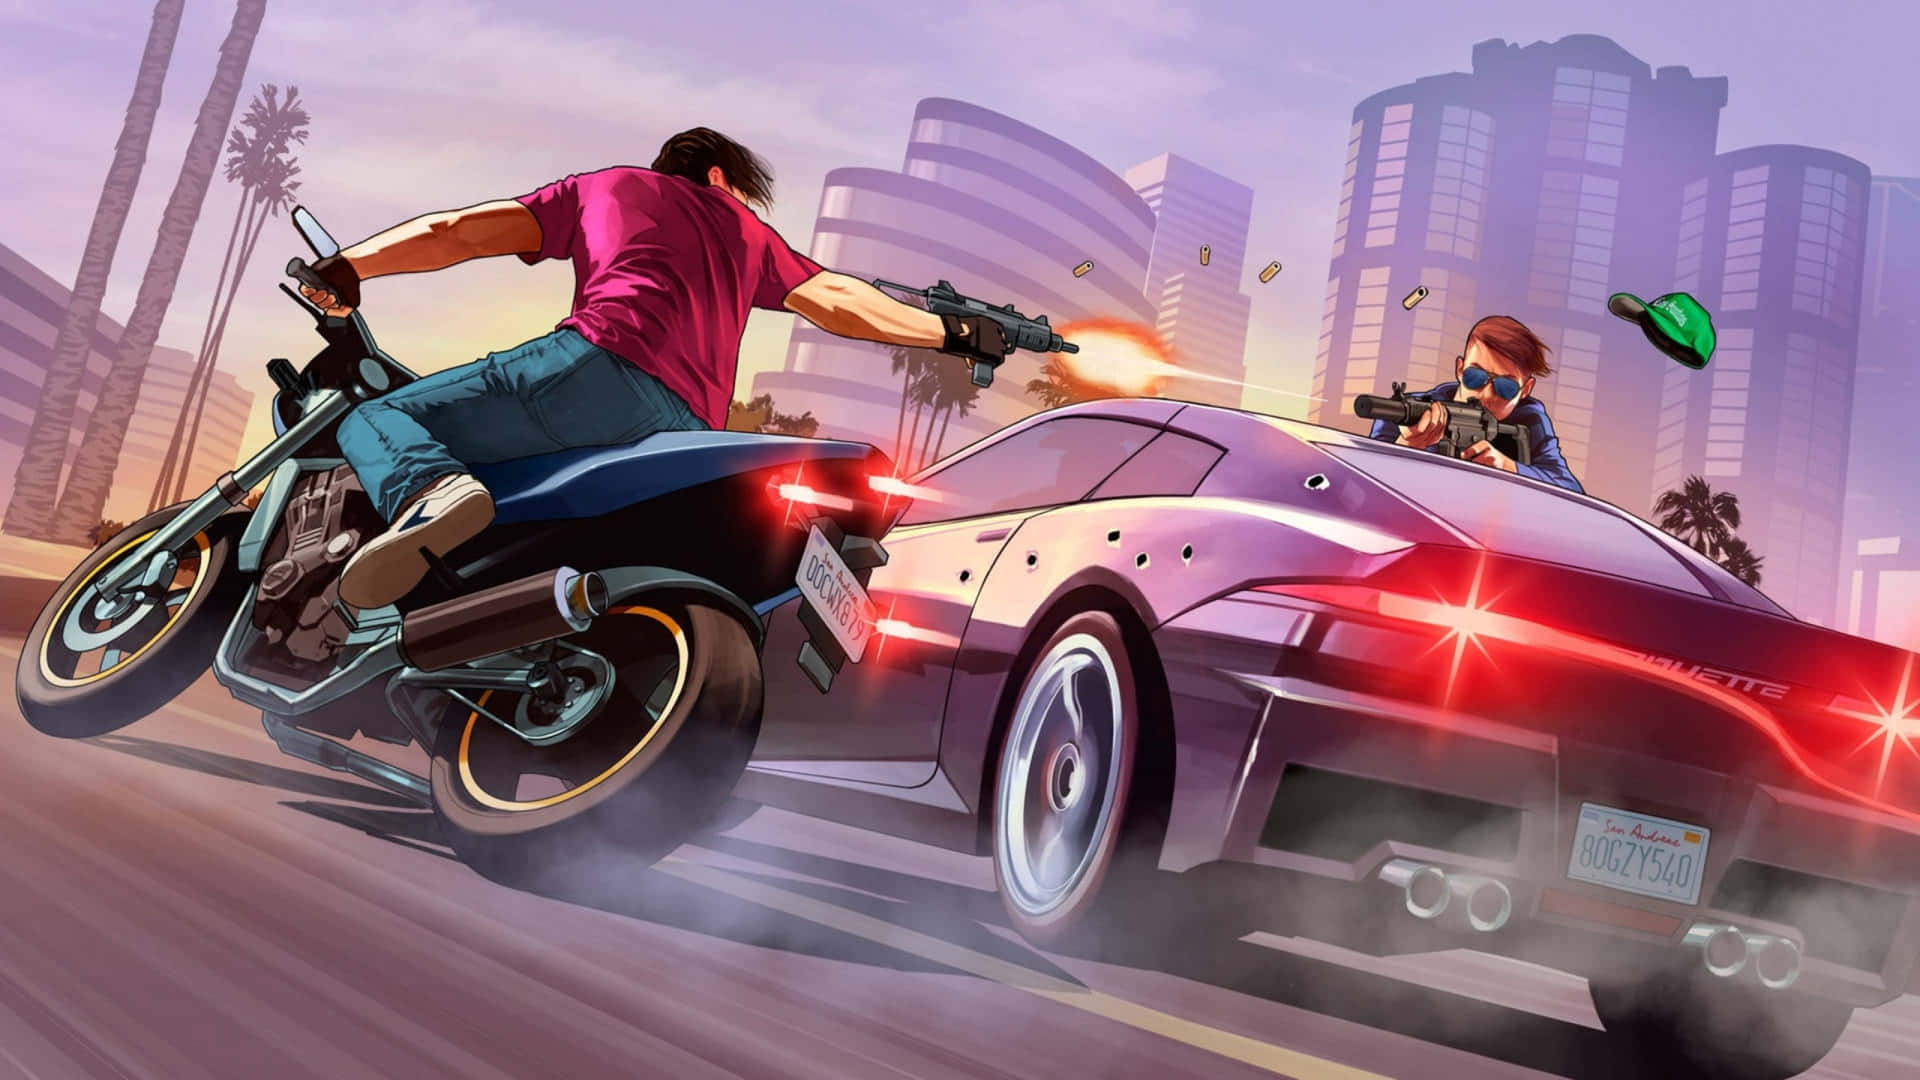 Upplevden Spännande Världen Av Grand Theft Auto 5 I Hög Upplösning På 2560x1440. Wallpaper